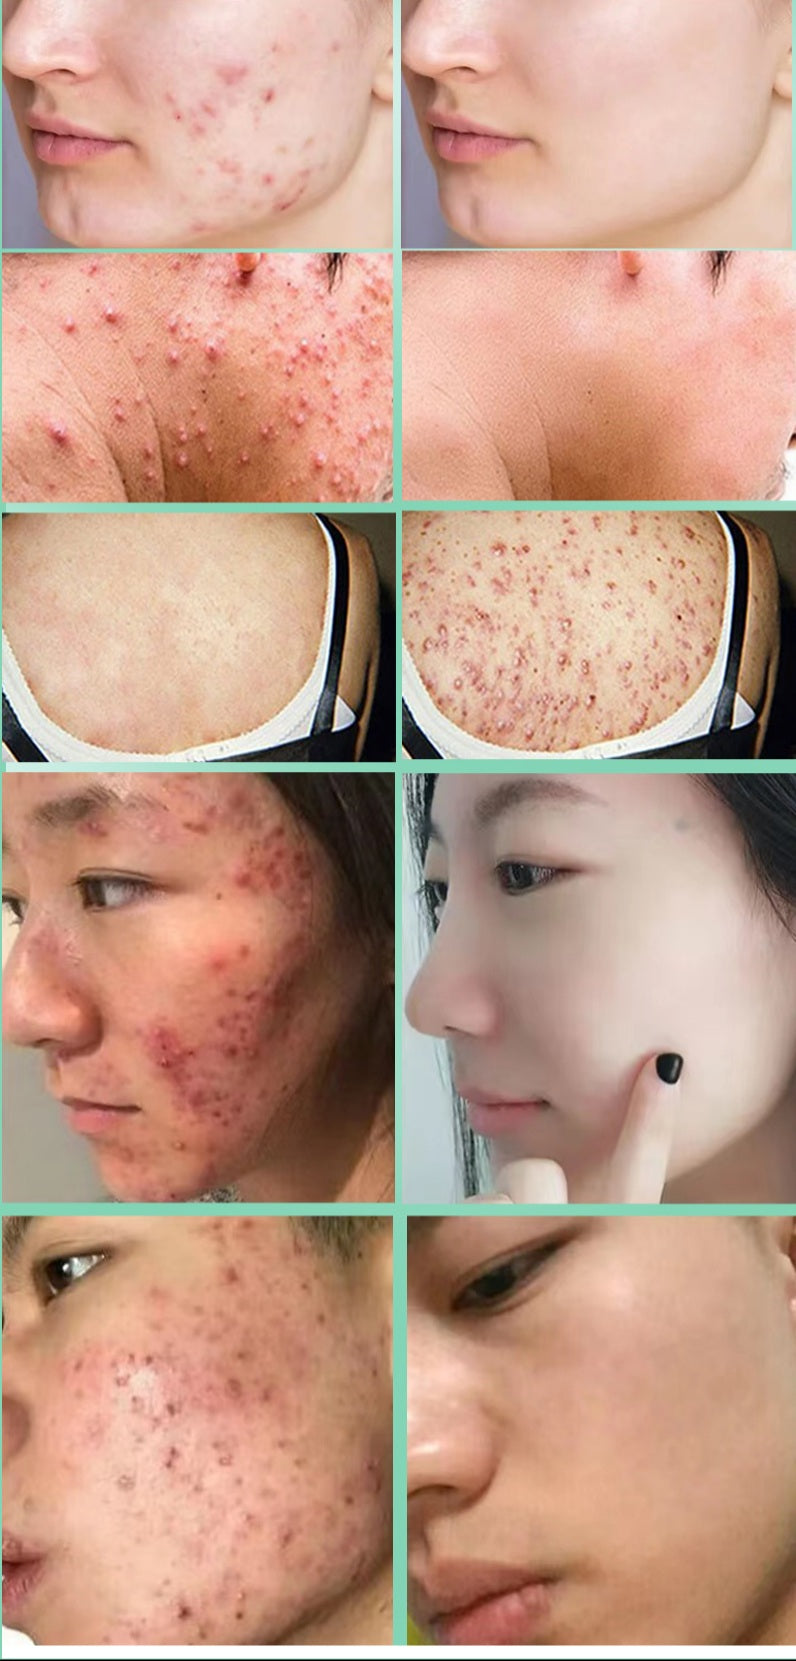 Lozione magica per la riparazione del viso/corpo per acne, brufoli, eczema, macchie scure/rosse, iperpigmentazione, eruzioni cutanee, ecc. Risultati garantiti in 5-7 giorni